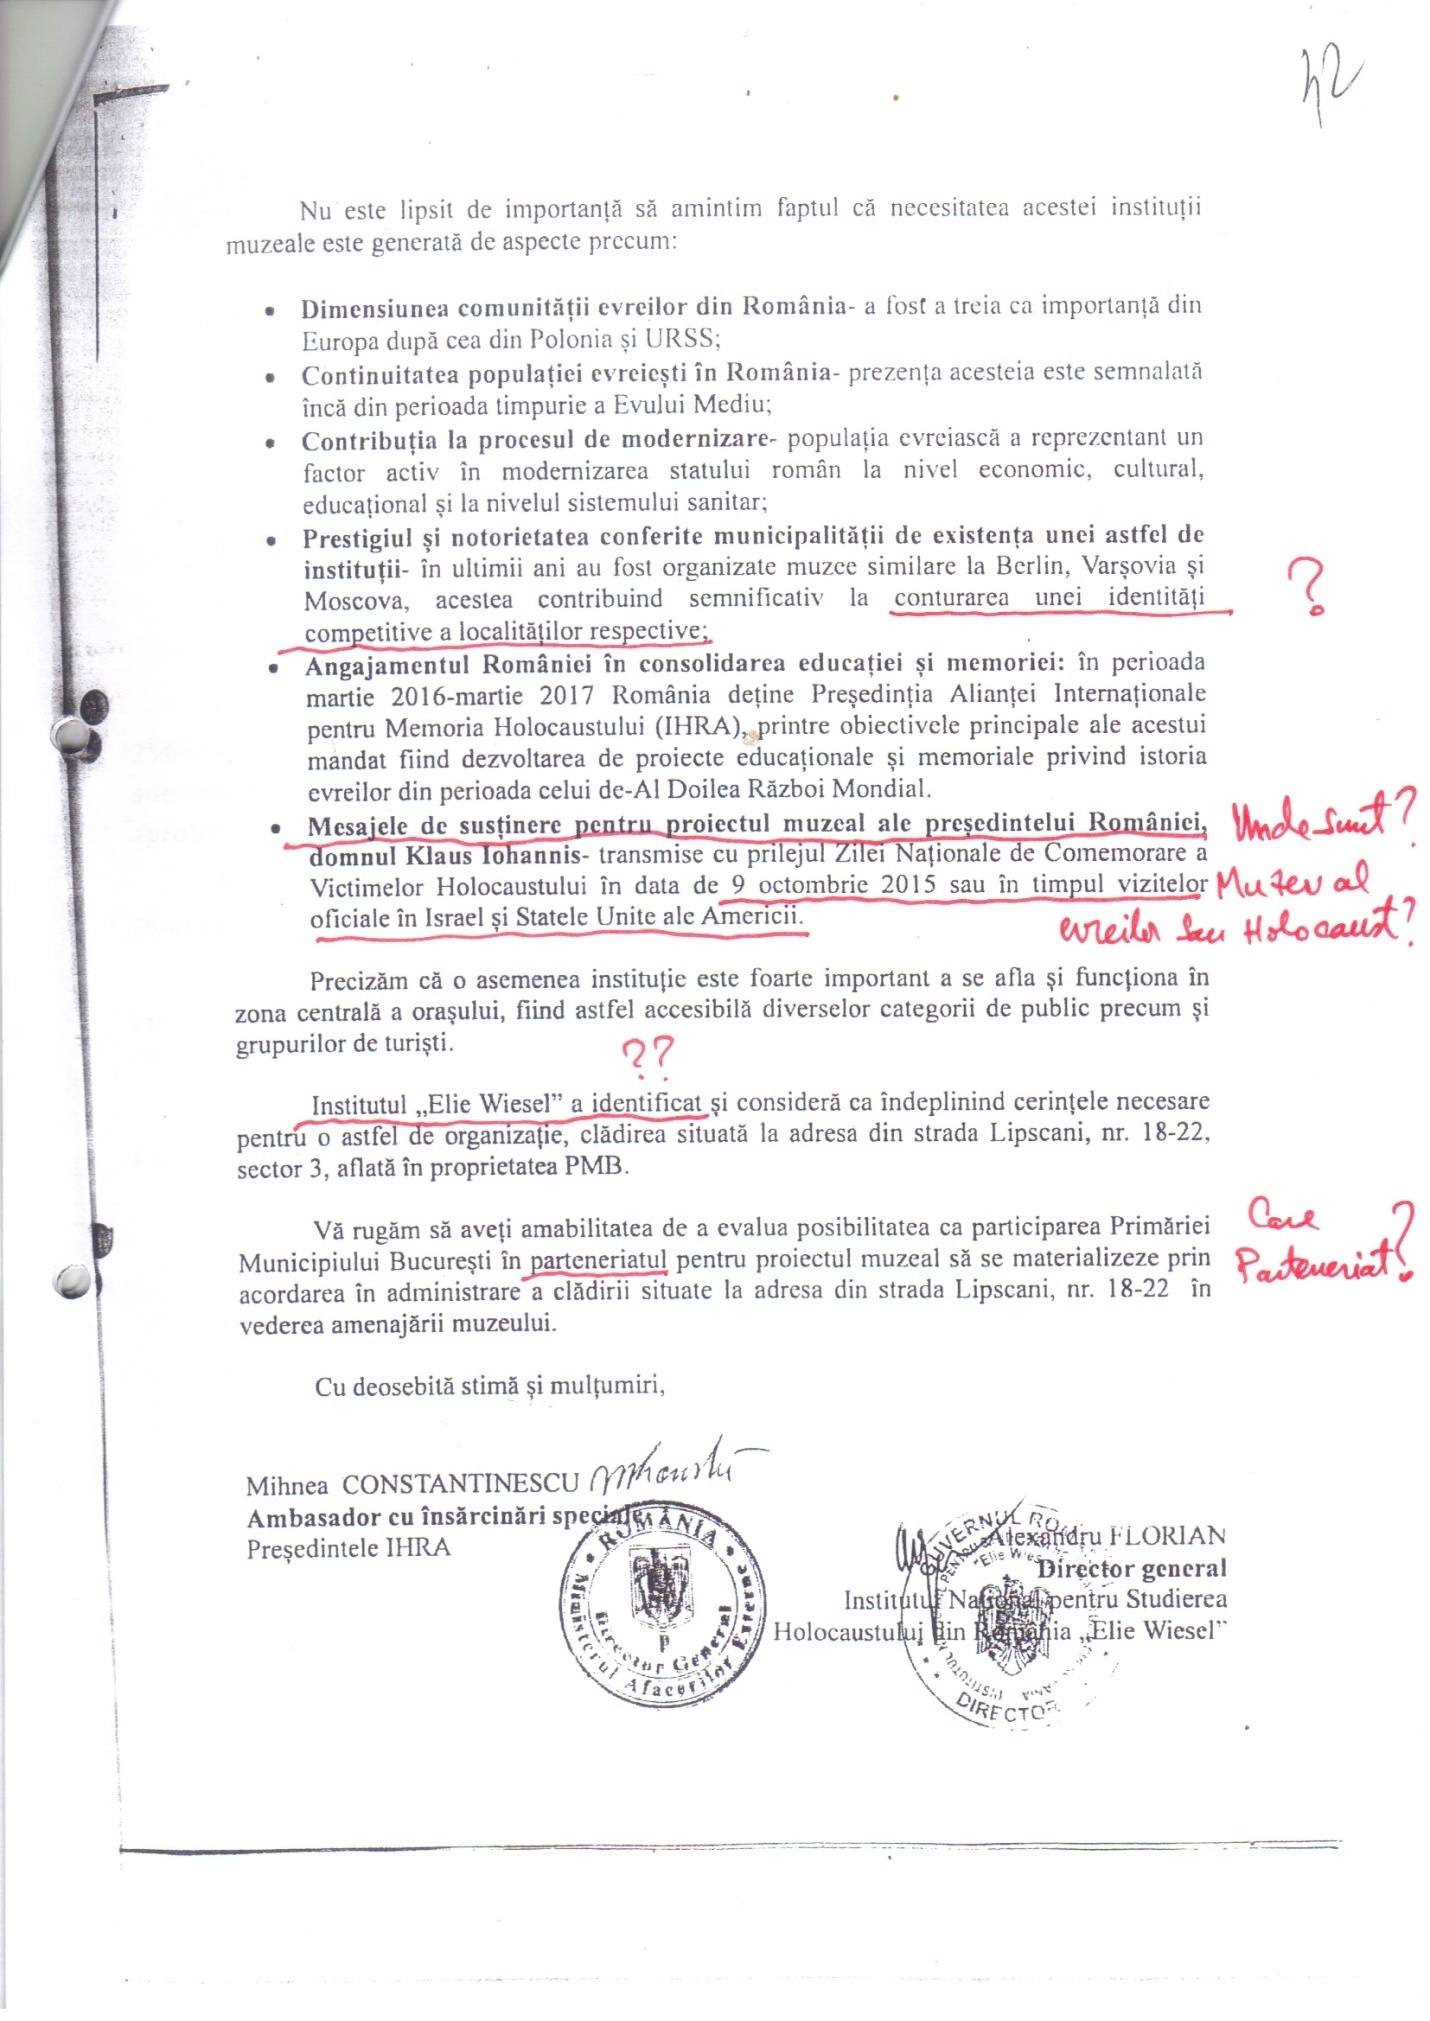 Cererea depusă de Institutul ”Elie Wiesel” pentru obținerea dreptului de administrare pentru Palatul Dacia-România